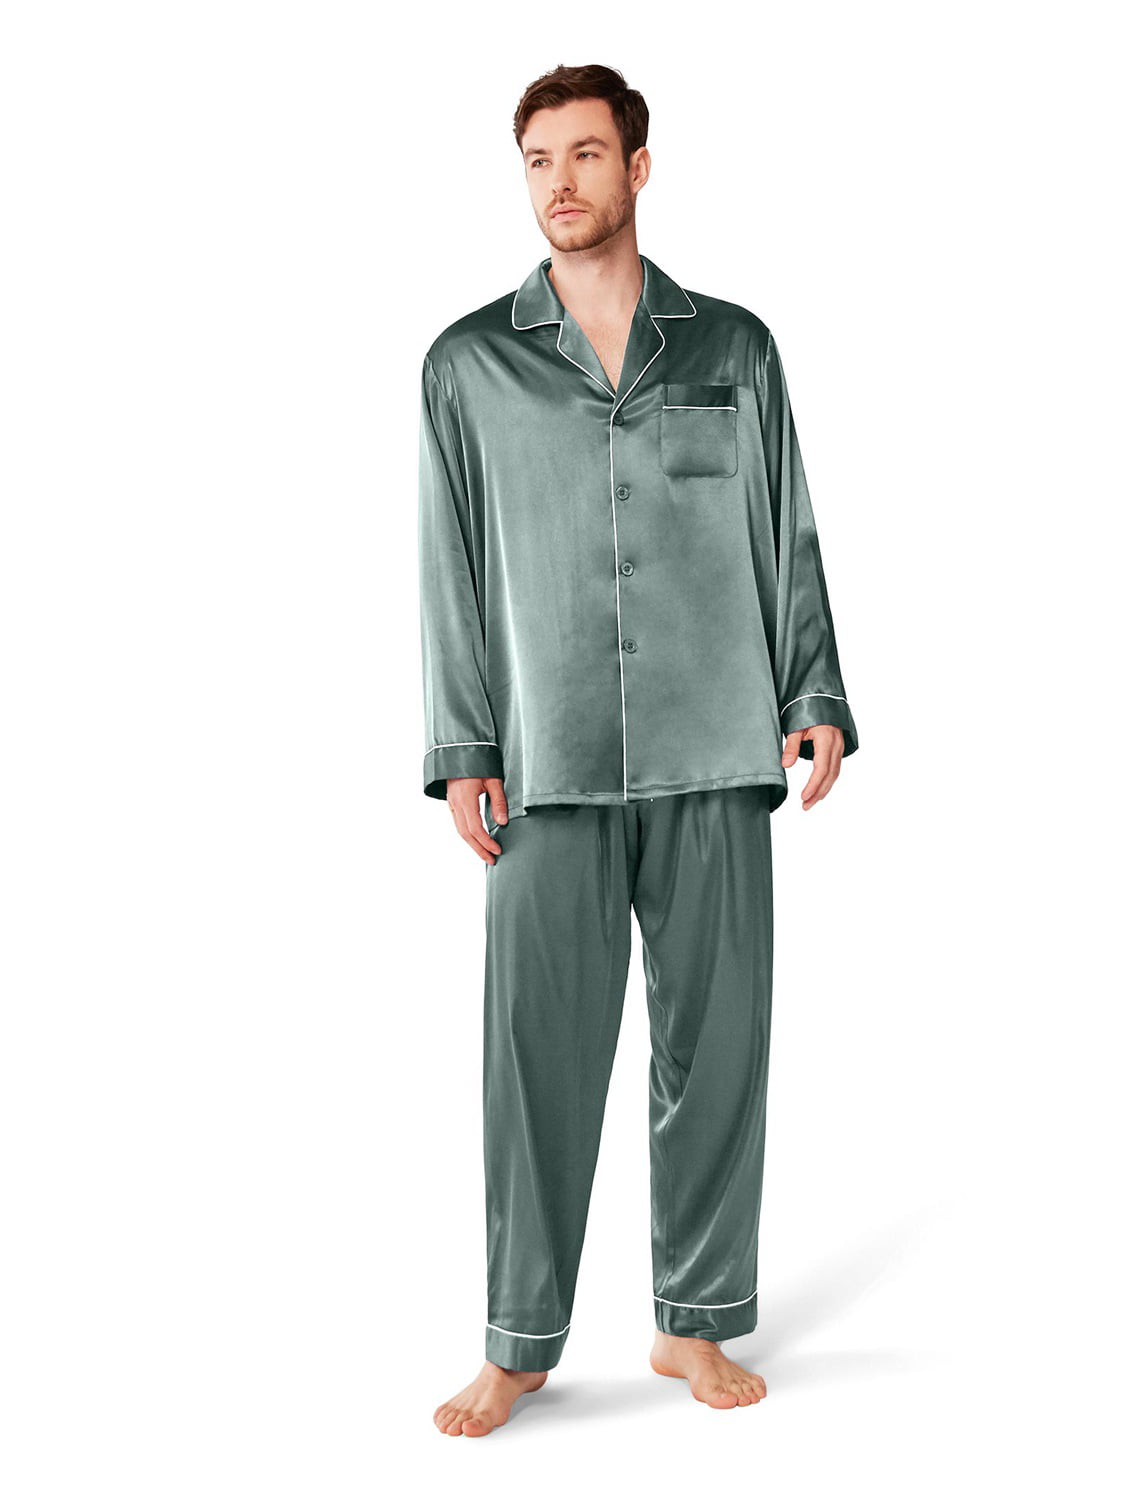 SIORO Mens Silky Satin Pajamas Set Sleepwear Loungewear Button